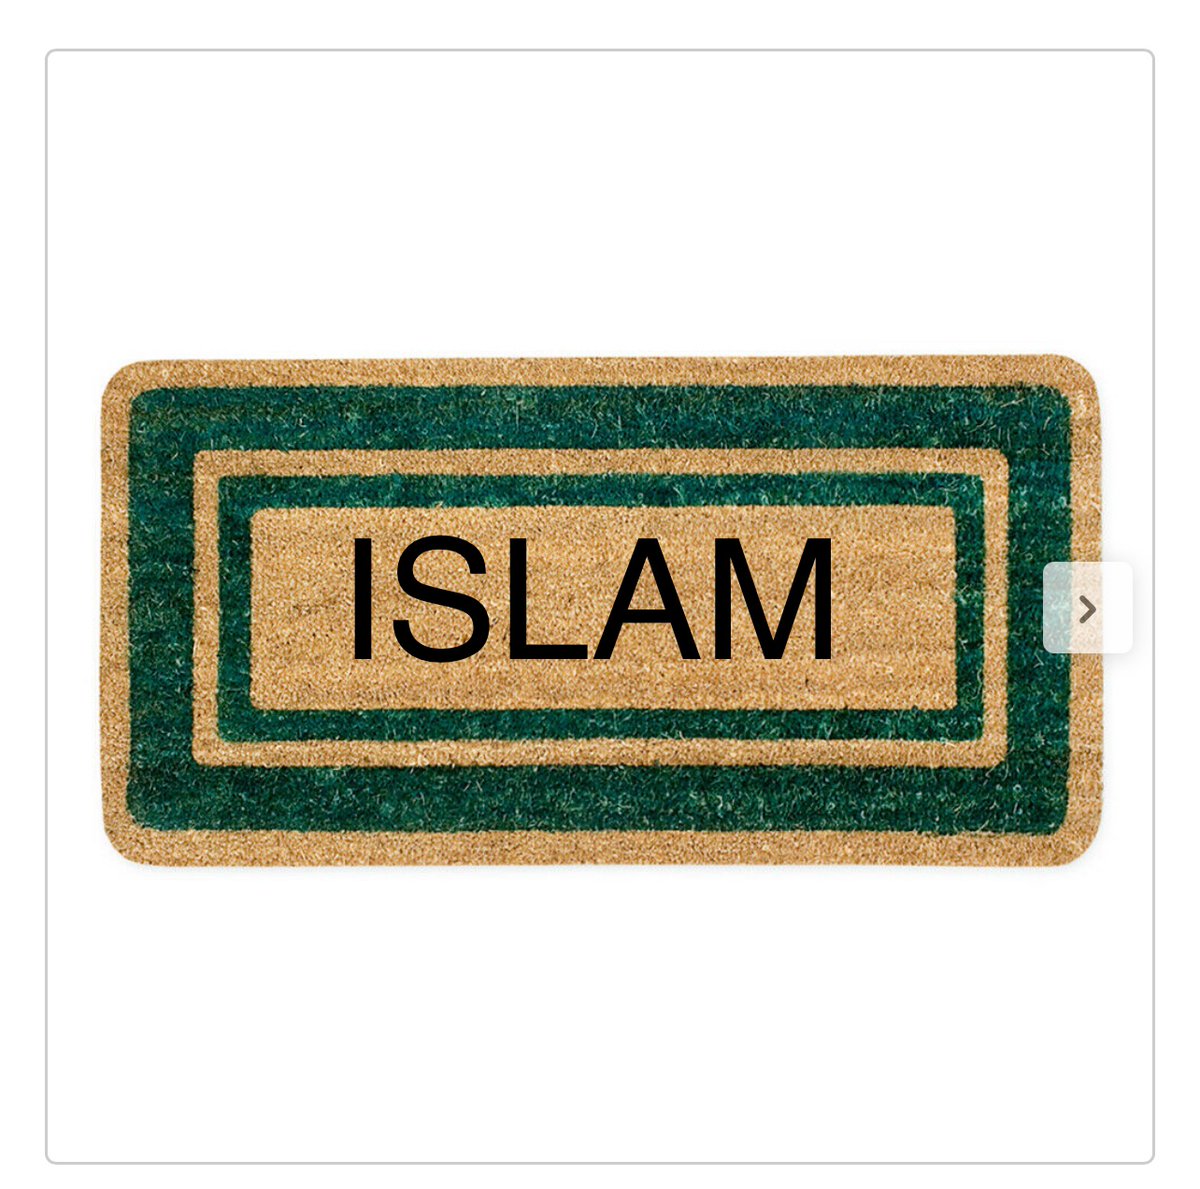 J’ai acheté un paillasson chez action et je l’ai personnalisé….
Je l’ai appelé Islam 😈!

Il est biodégradable et certifié halal.

👉🏻Tweet sponsorisé par la mosquée de Paris dans le cadre de la compagne nationale du blasphème.